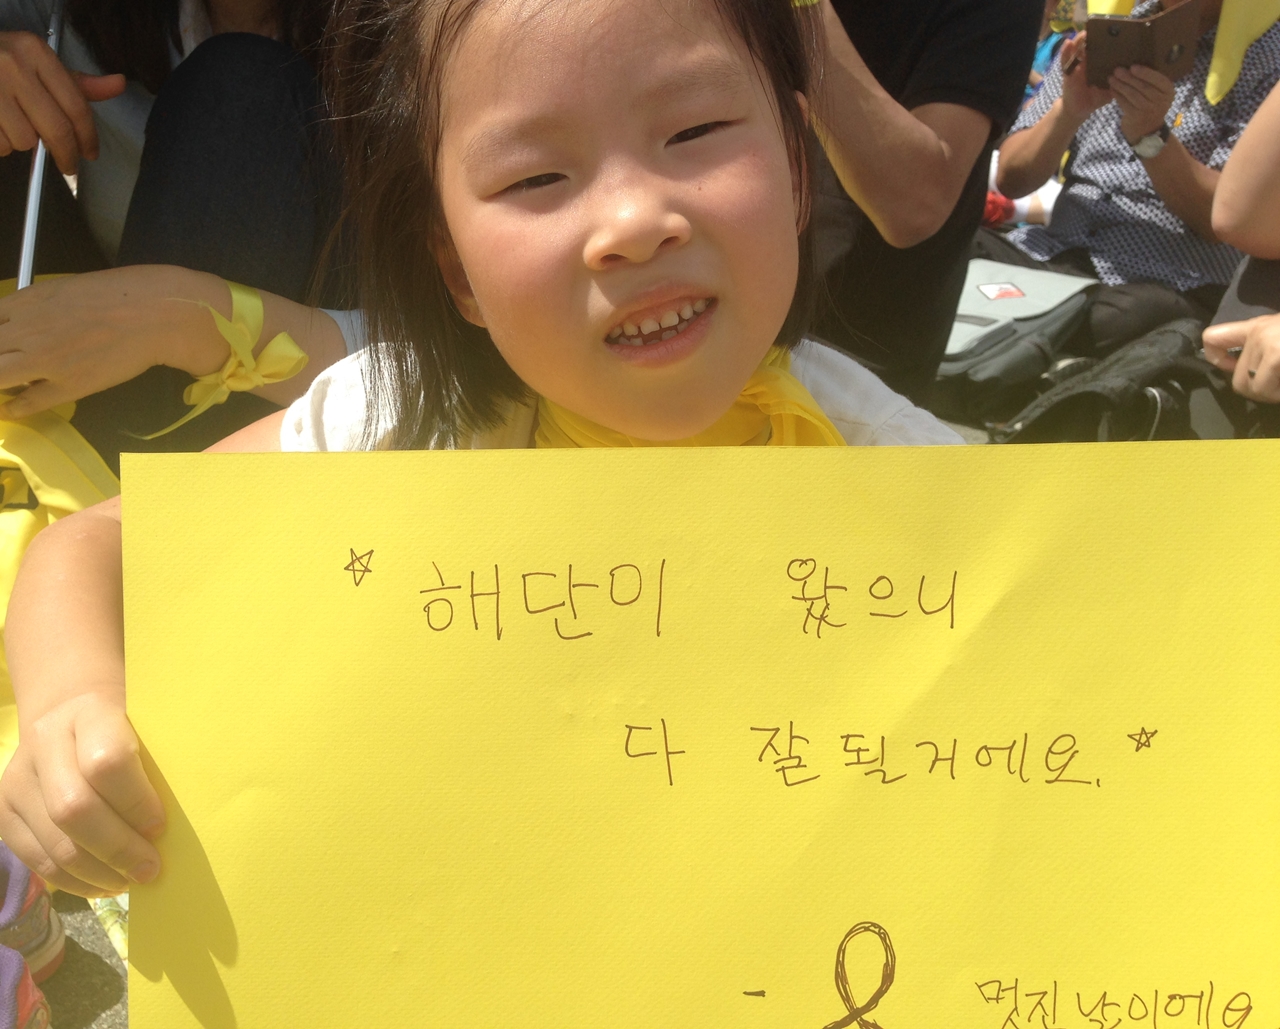 7살 여자 아이도 아빠가 써준 피켓을 들었다. 피켓에는 노란 리본 그림과 '멋진날이에요'라는 문구도 함께 적혀 있다.